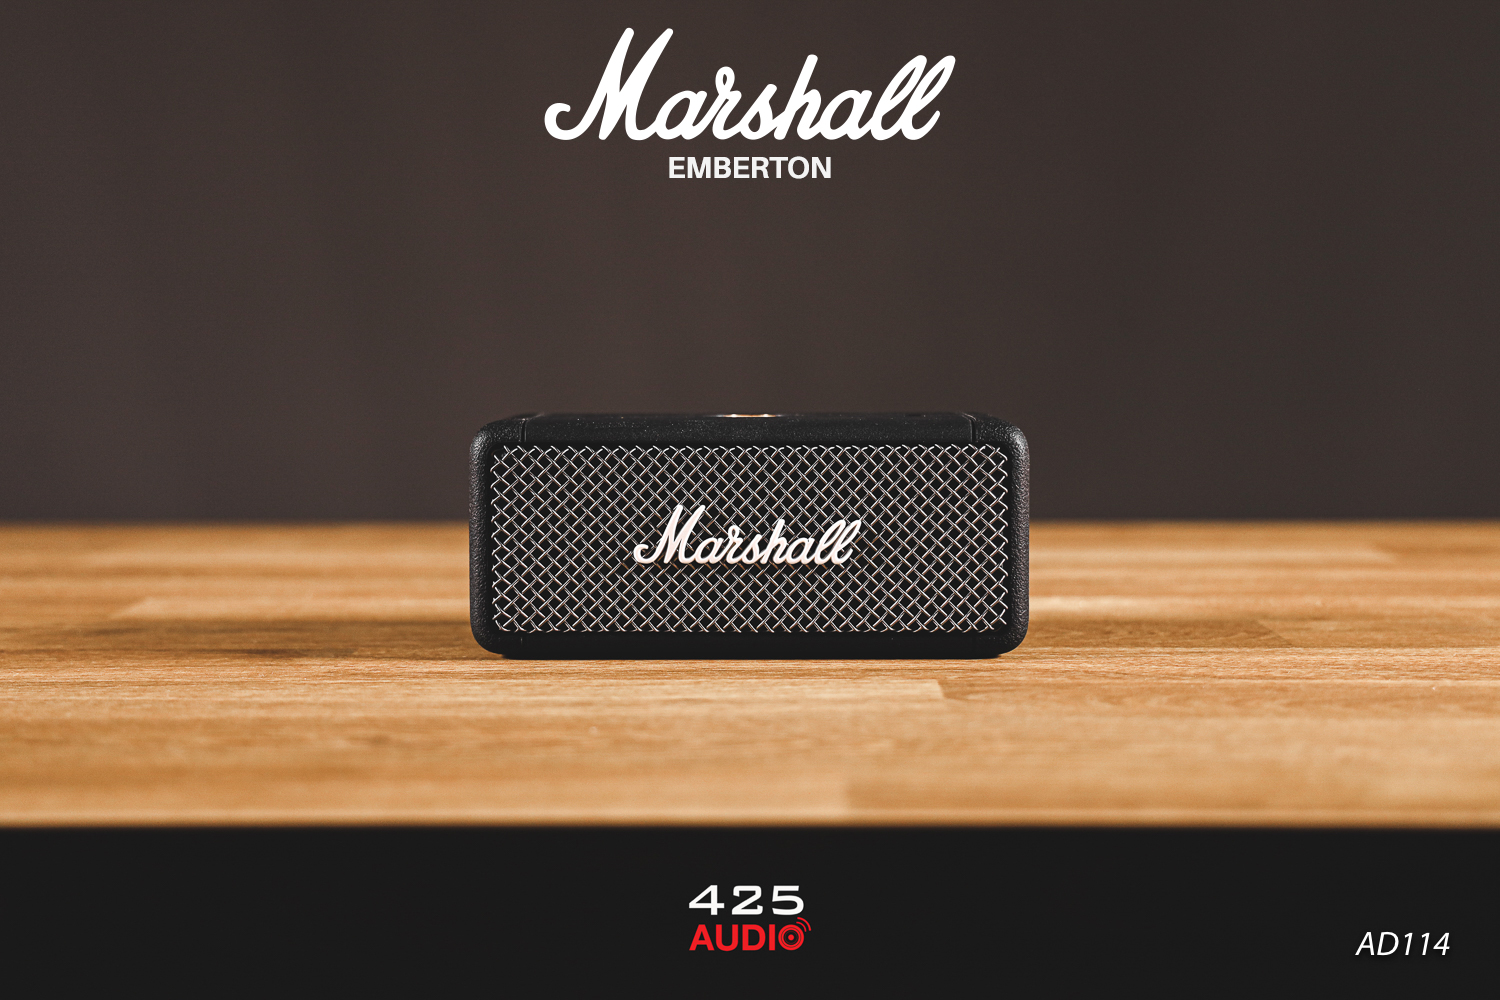 Marshall EMBERTON,emberton,marshall emberton,ลำโพง marshall,Bluetooth Speaker,ลำโพงกันน้ำ,ลำโพงพกพา,ลำโพงบลูทูธ